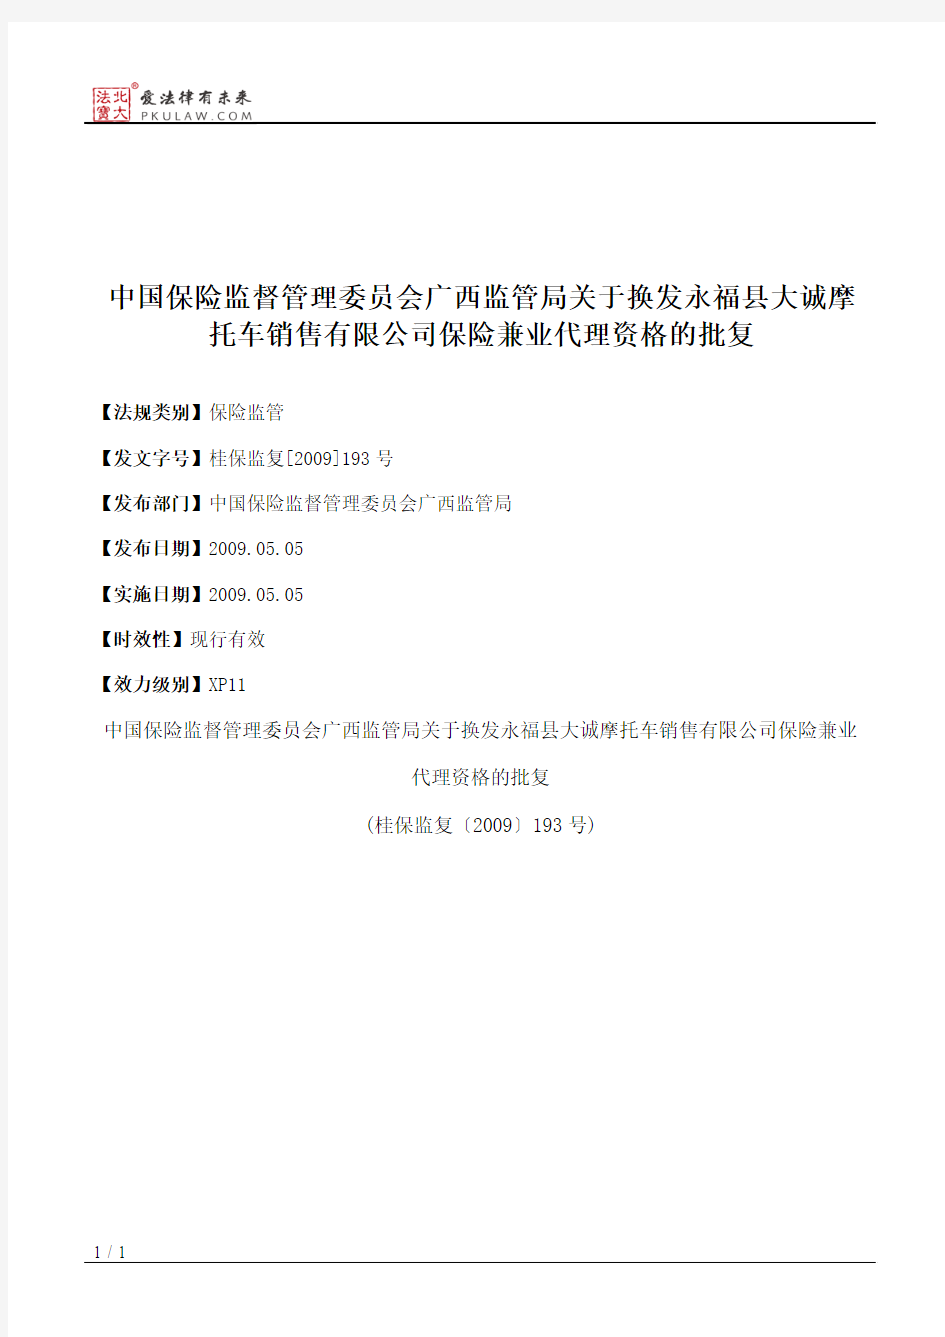 中国保险监督管理委员会广西监管局关于换发永福县大诚摩托车销售